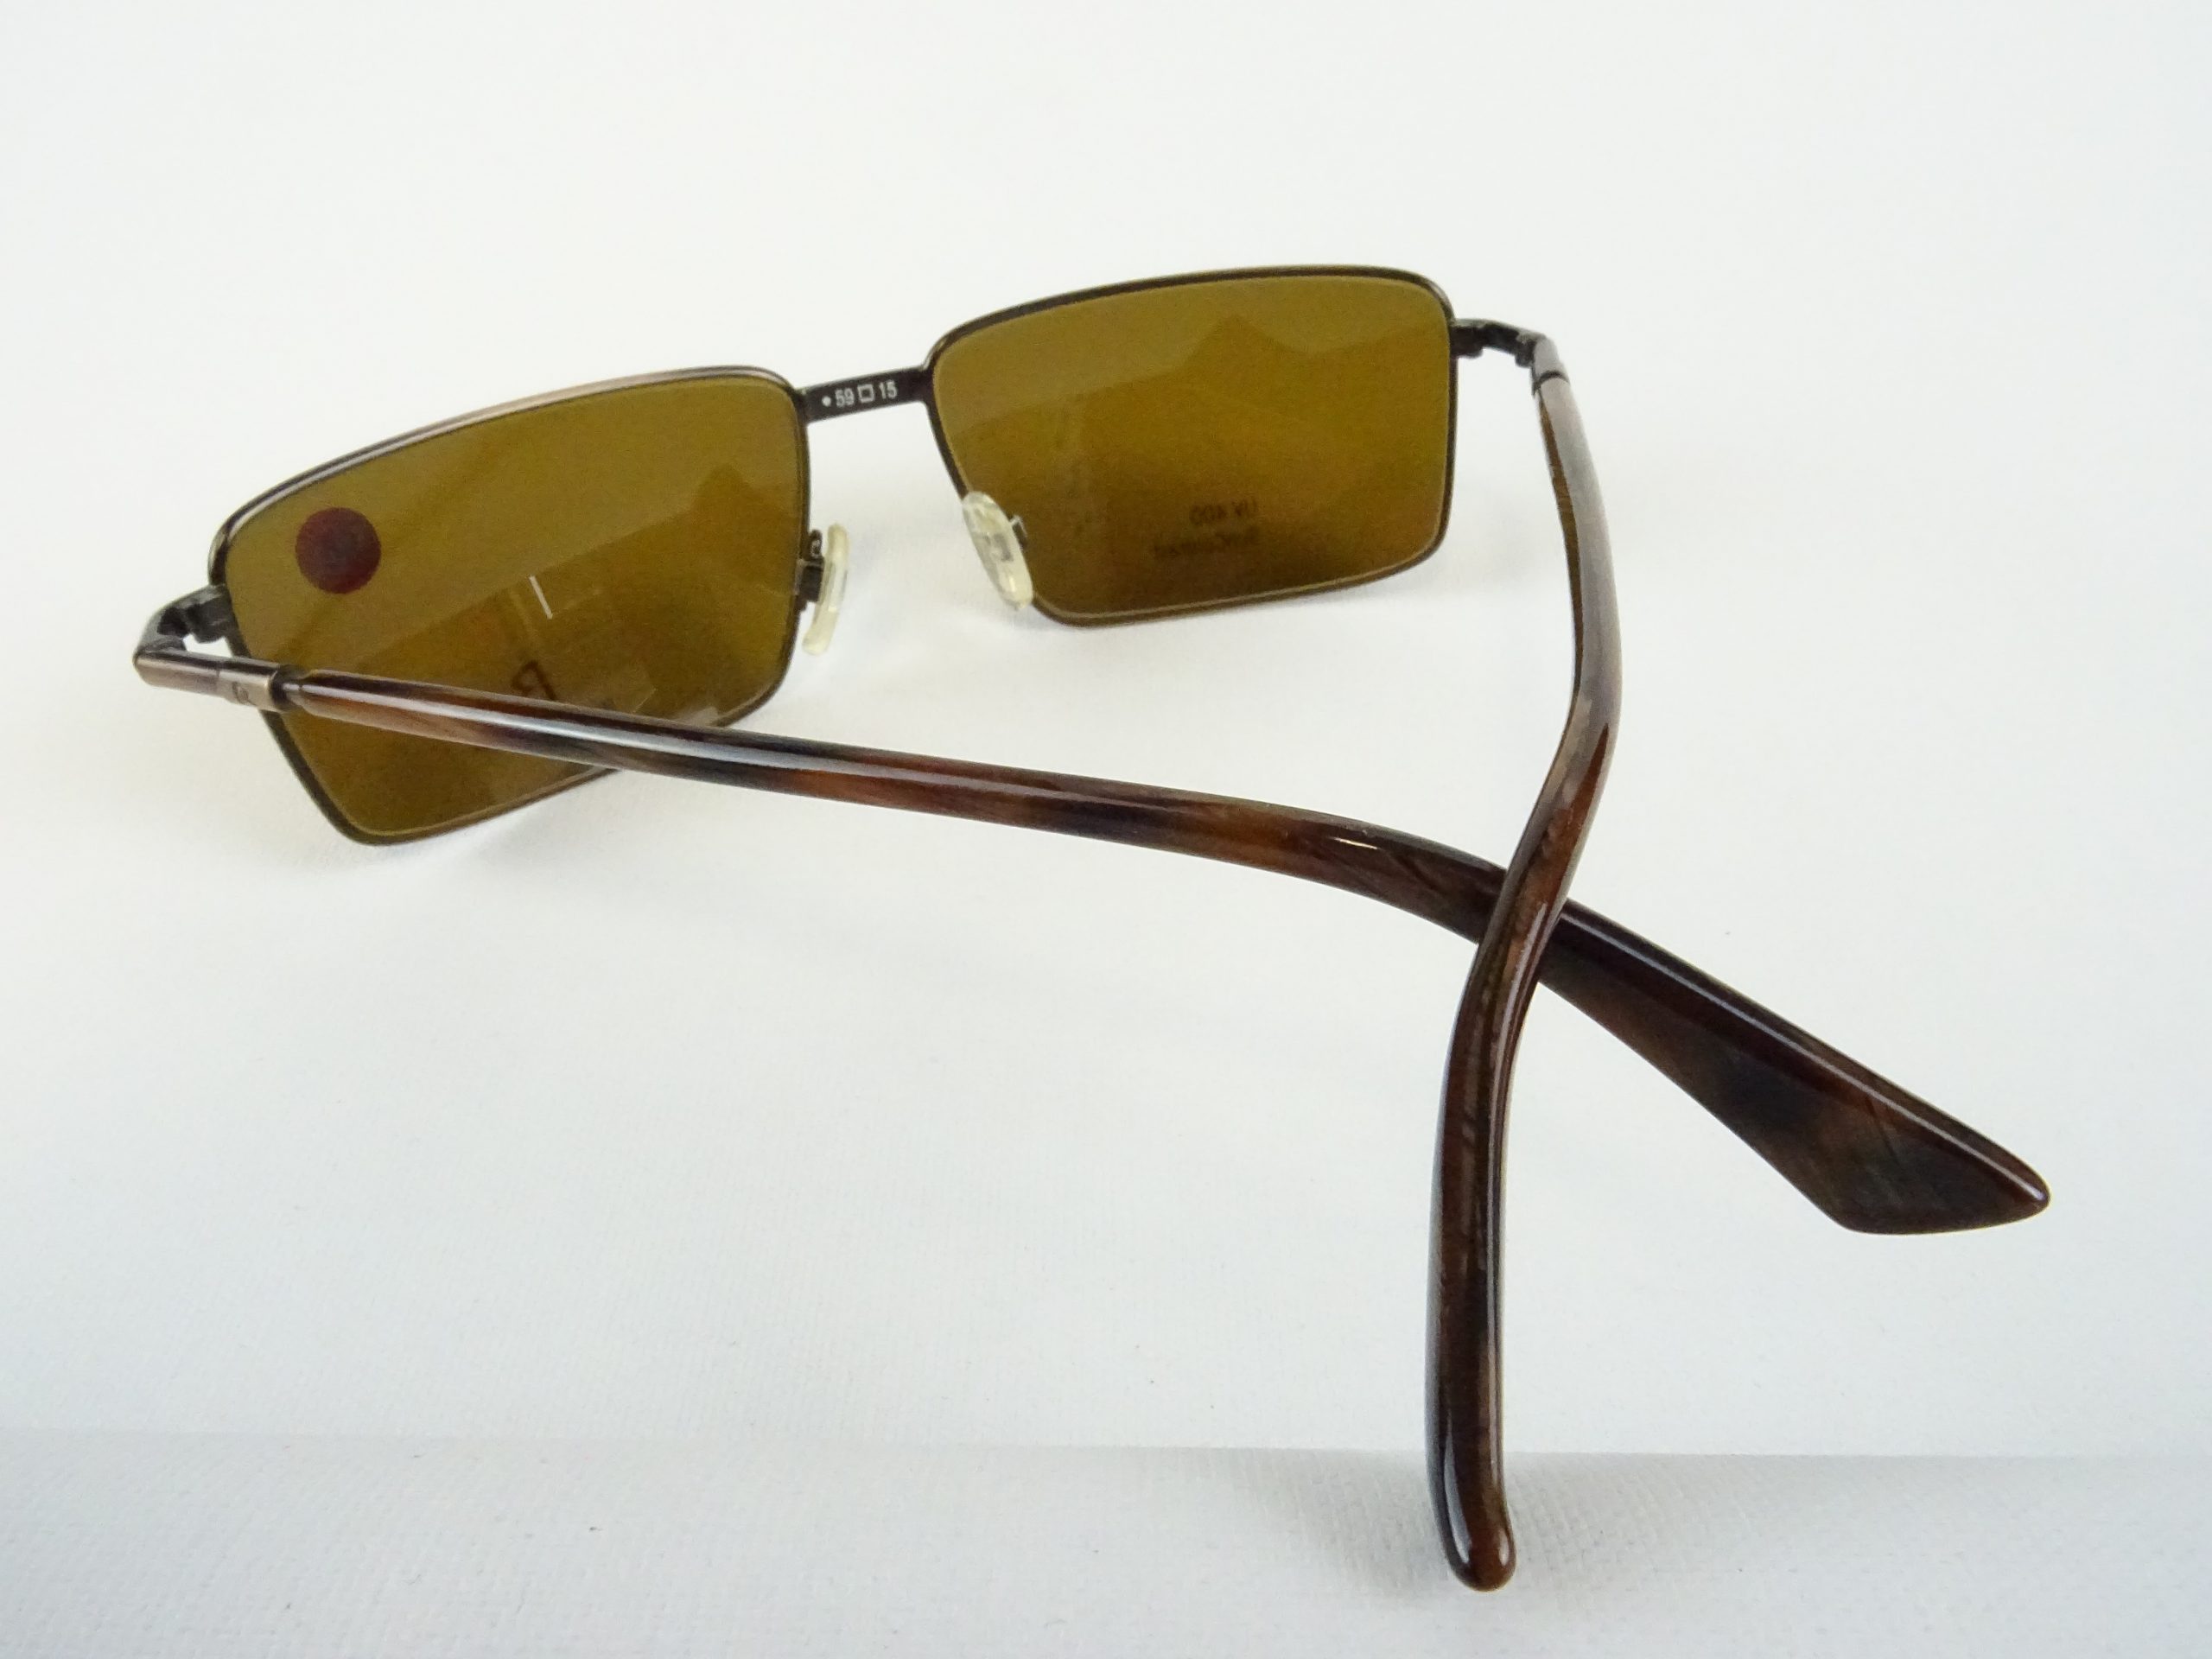 RODENSTOCK Welt Vintage Contrast curved sportlich – Herren eckige Sonnenbrille Gr. Metallfassung 400 braun M Gläser UV SUN Brillen Form